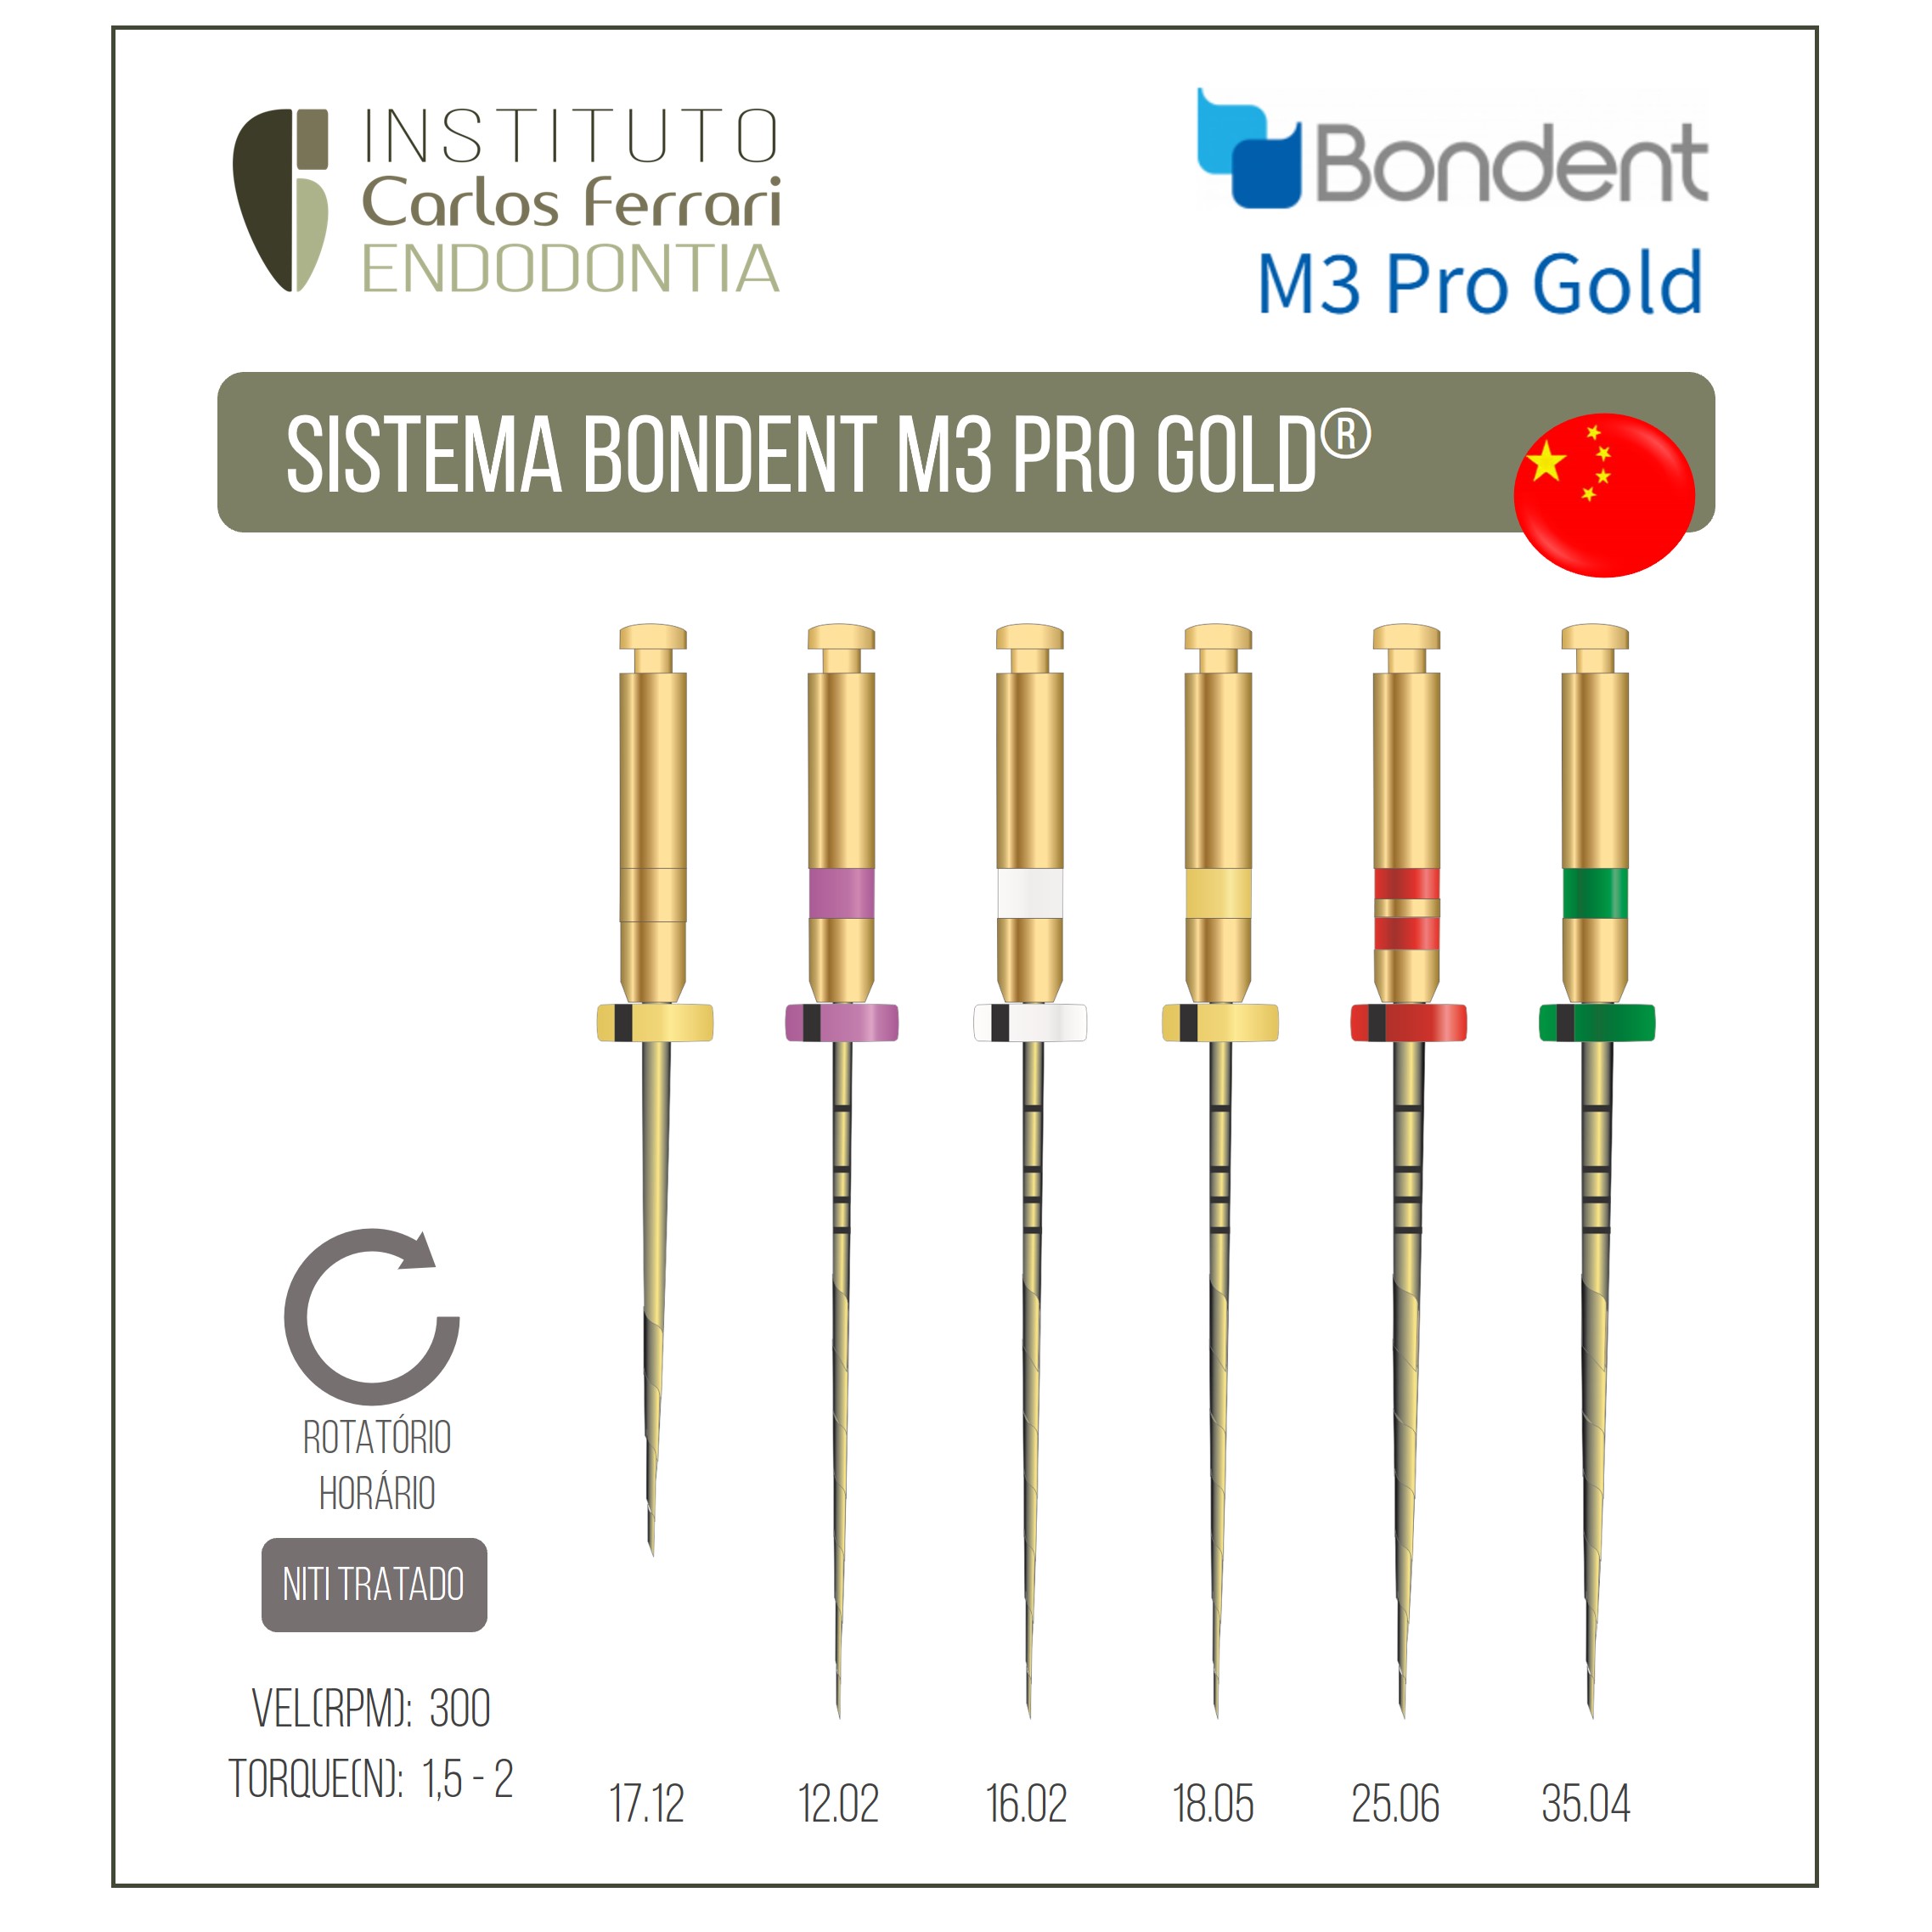 您目前正在查看Bondent M3 Pro黄金文件。使用指南。